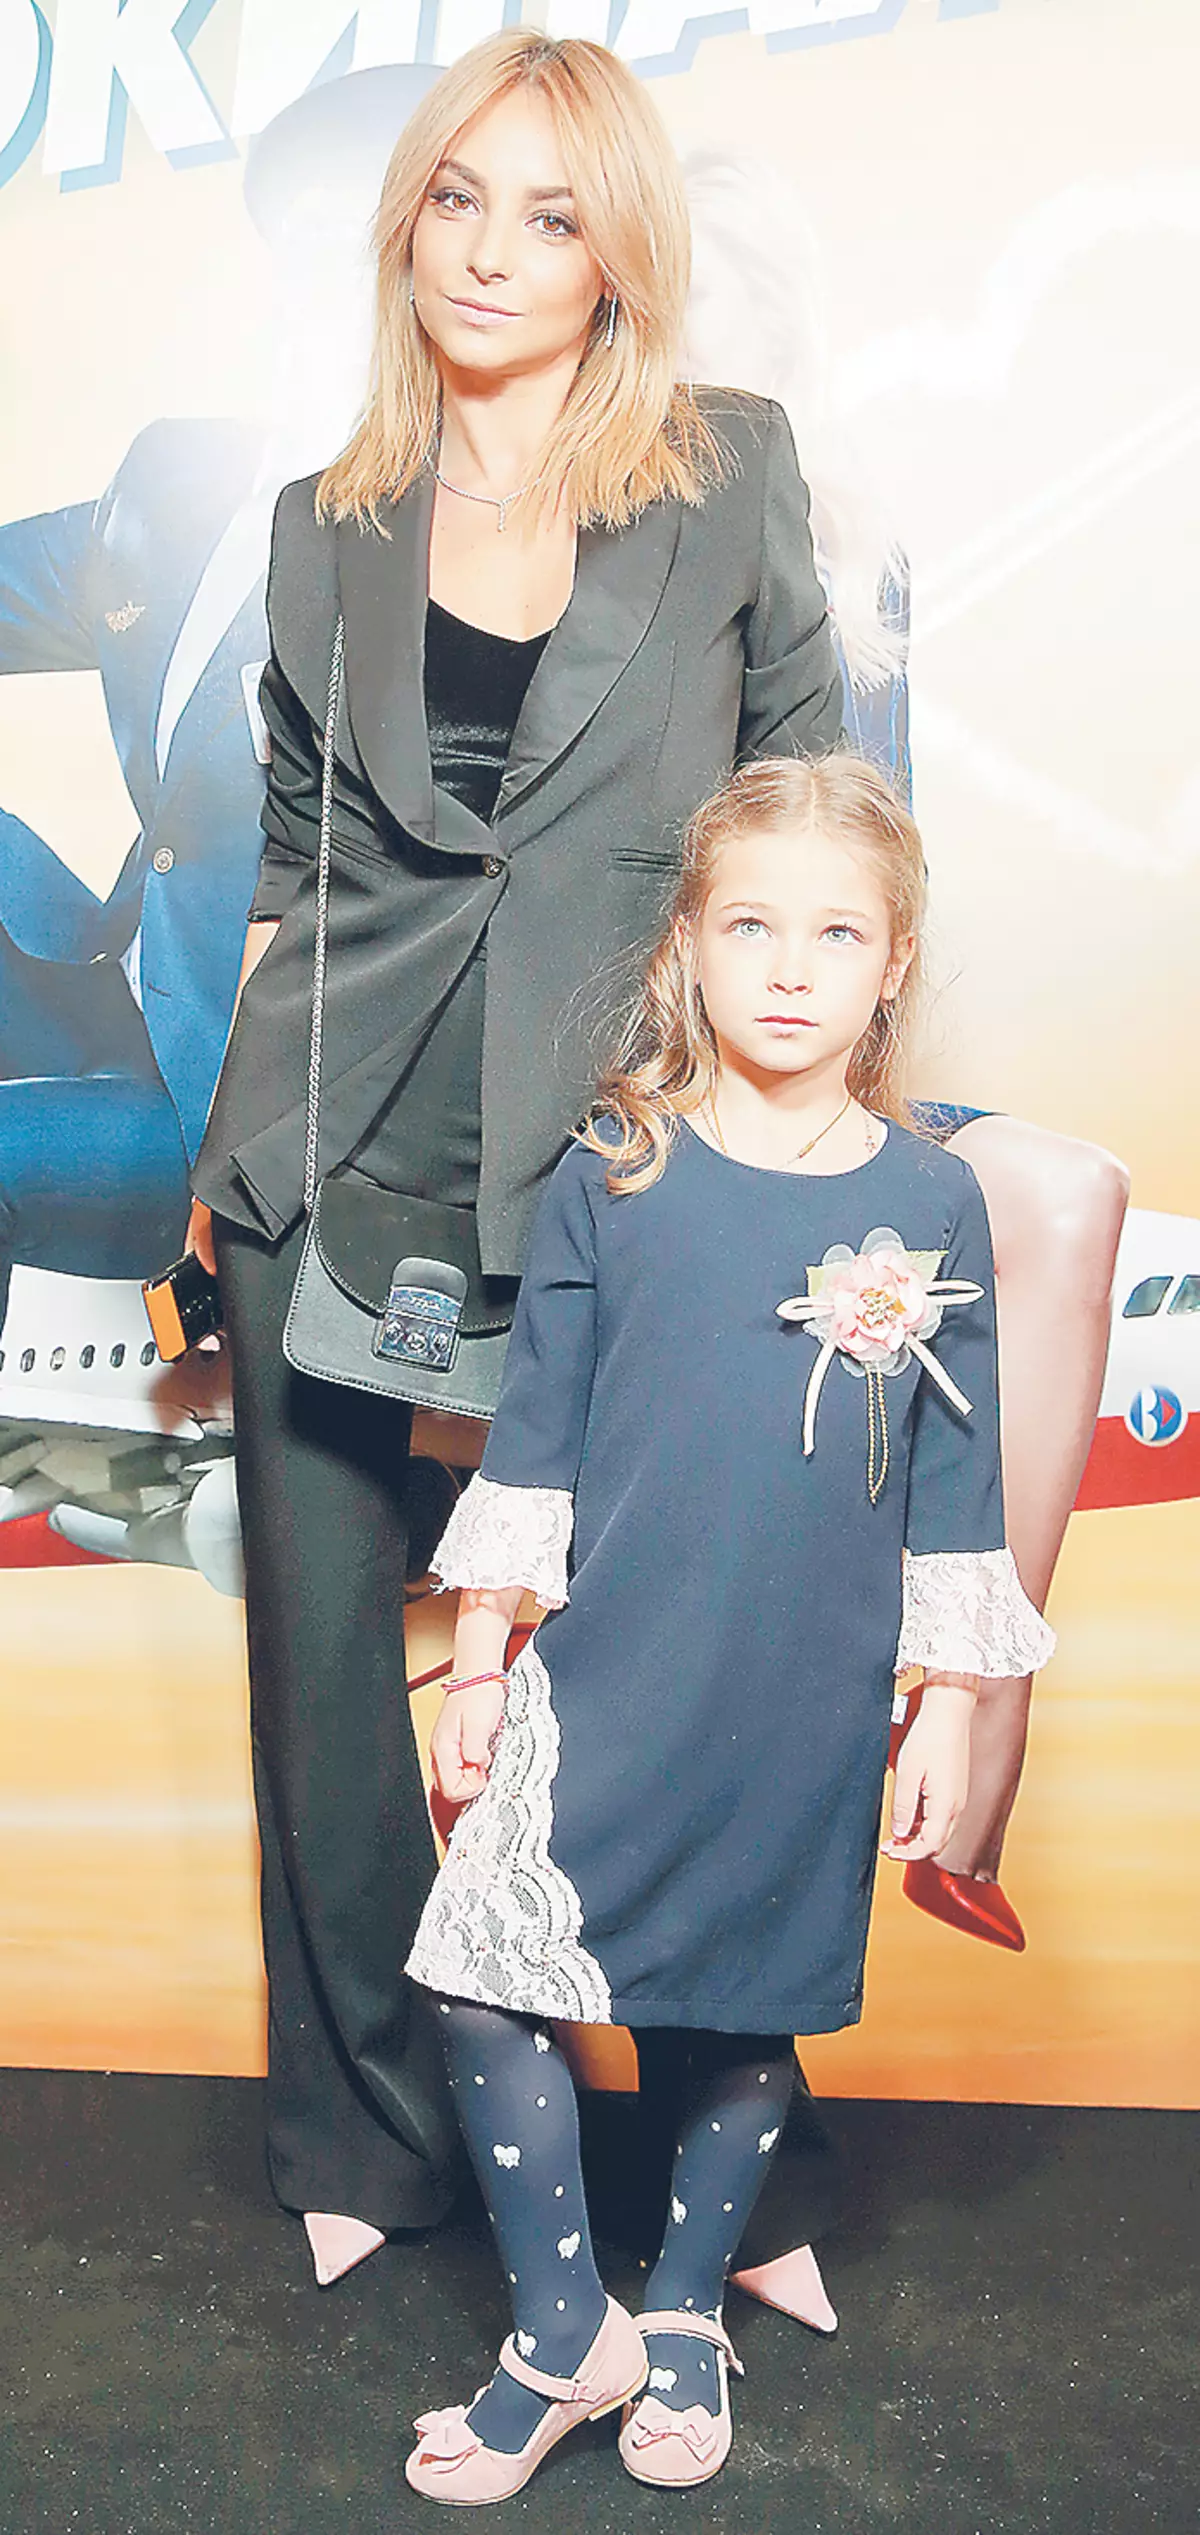 Η Daria Sagalova έφερε την παλαιότερη κόρη του Ελισάβετ, ο οποίος ήταν έξι ετών